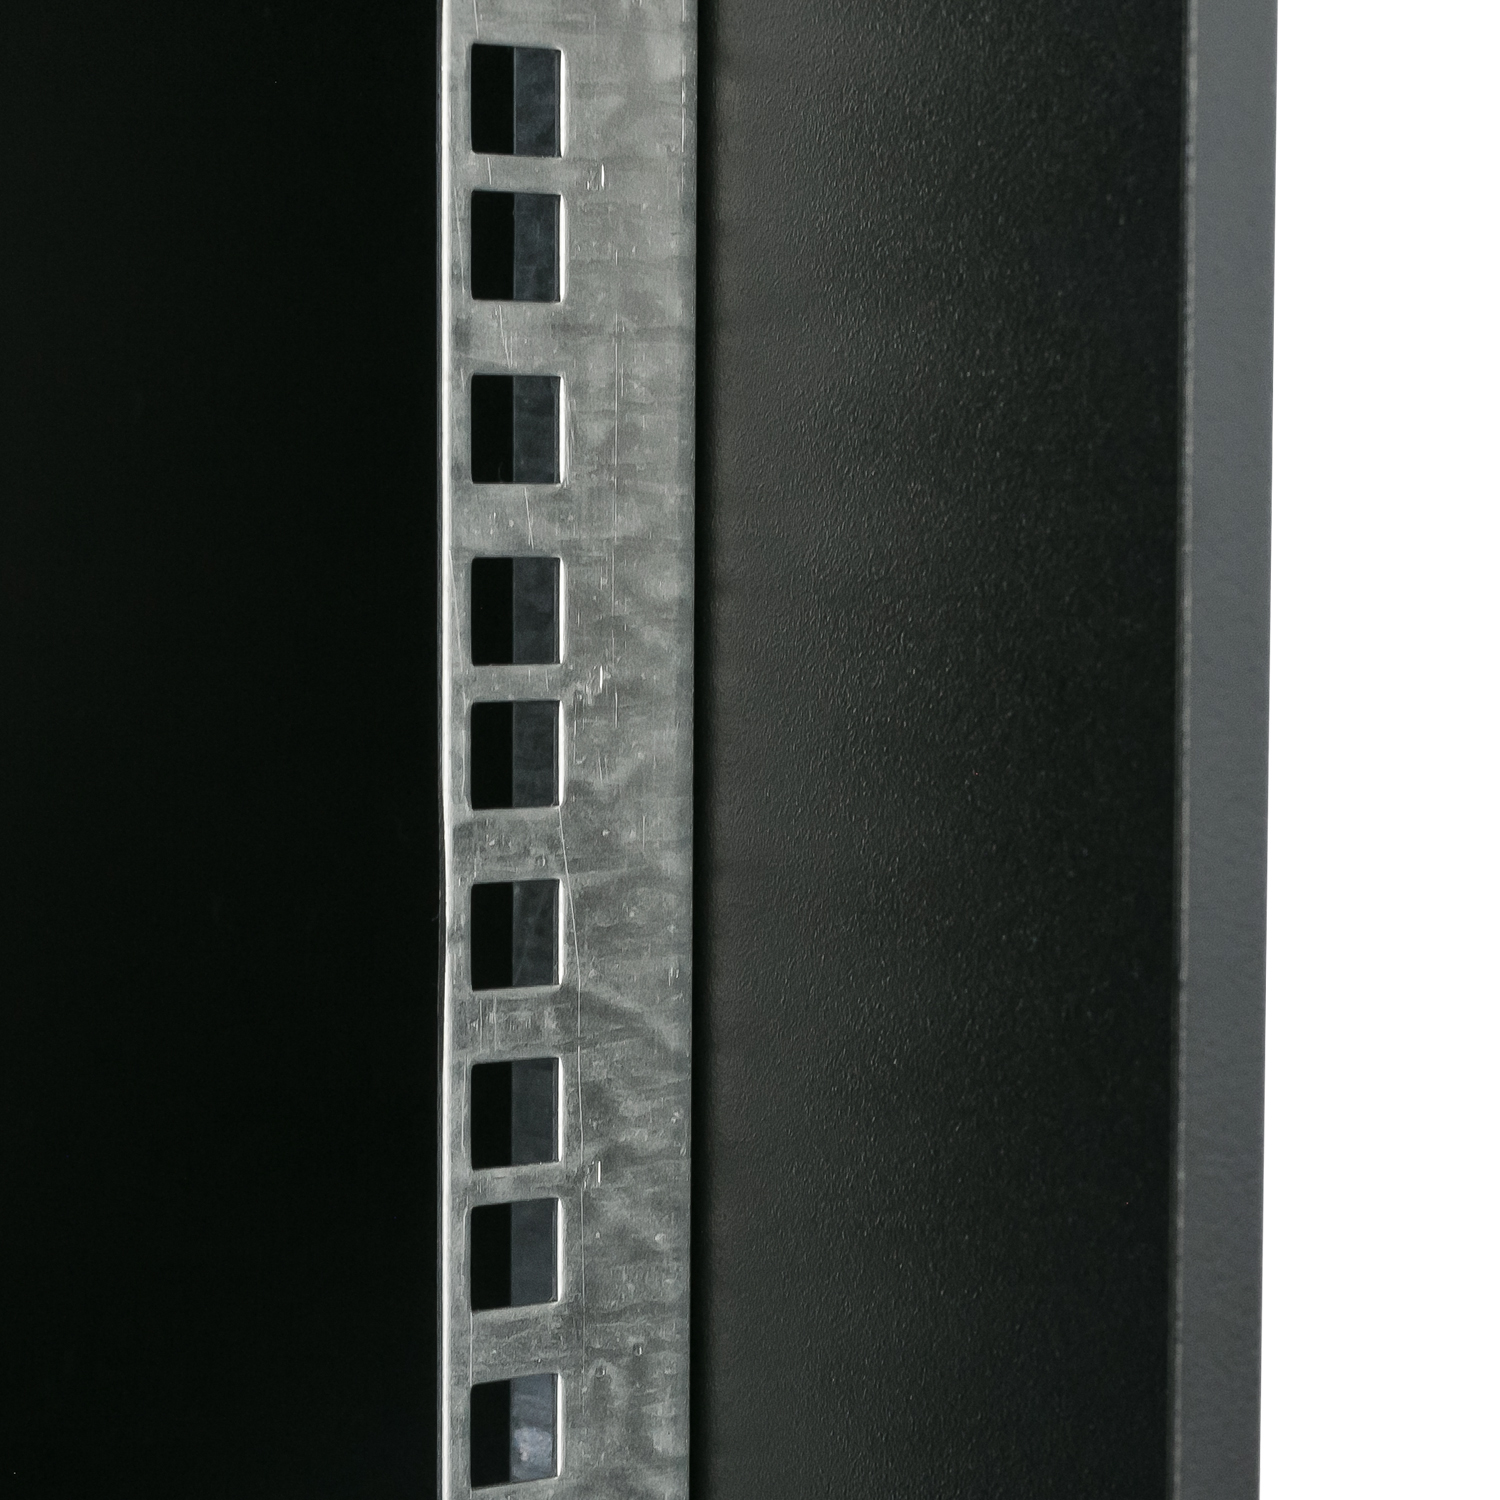 Unmontierter 19 Zoll Serverschrank von HMF mit 7 Höheneinheiten in Schwarz